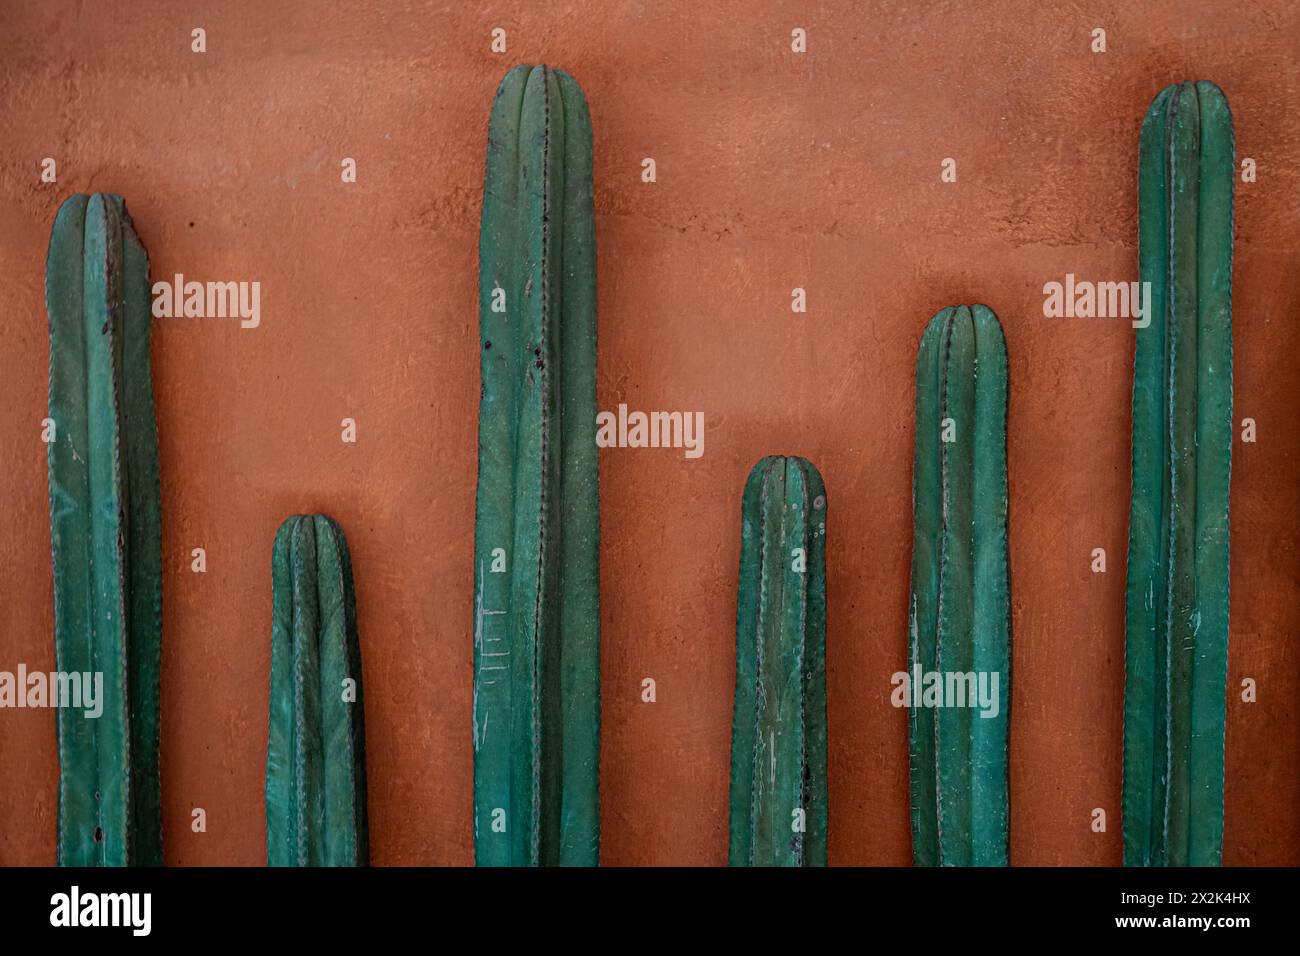 Une photographie de plusieurs grands cactus verts alignés contre un mur orange rustique, présentant un mélange de textures naturelles et de tons chauds et terreux. Banque D'Images